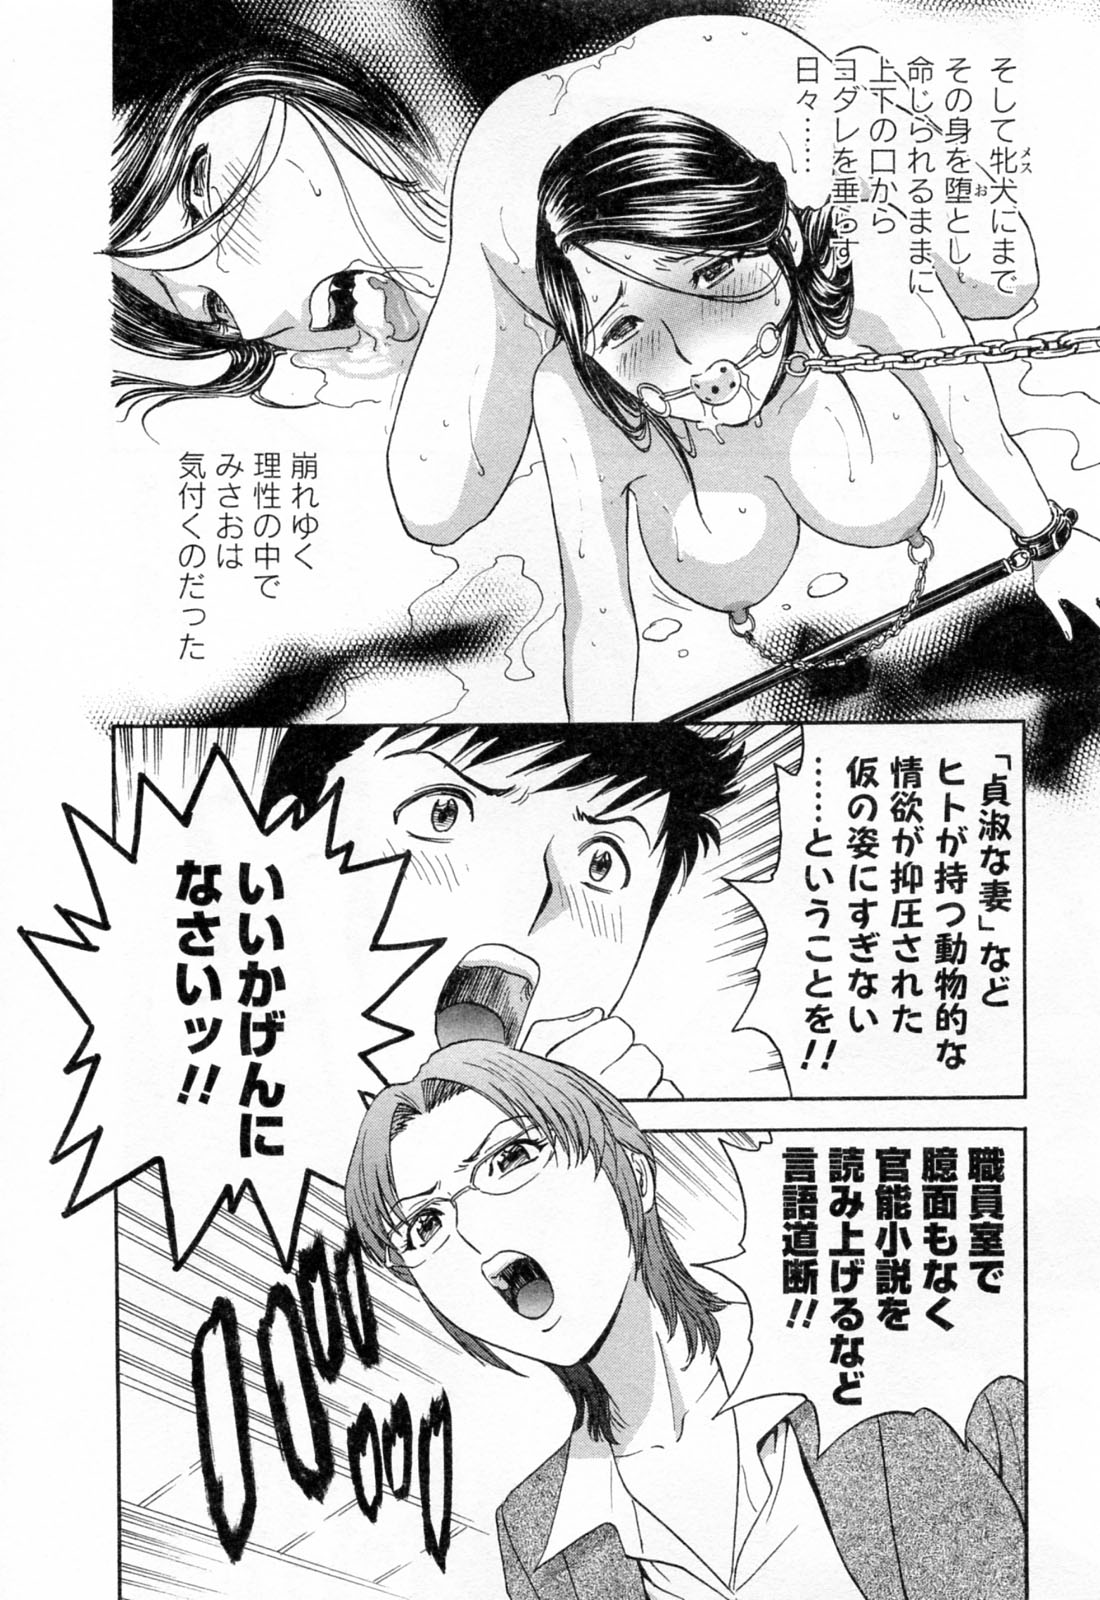 [Hidemaru] Mo-Retsu! Boin Sensei (Boing Boing Teacher) Vol.4 page 14 full